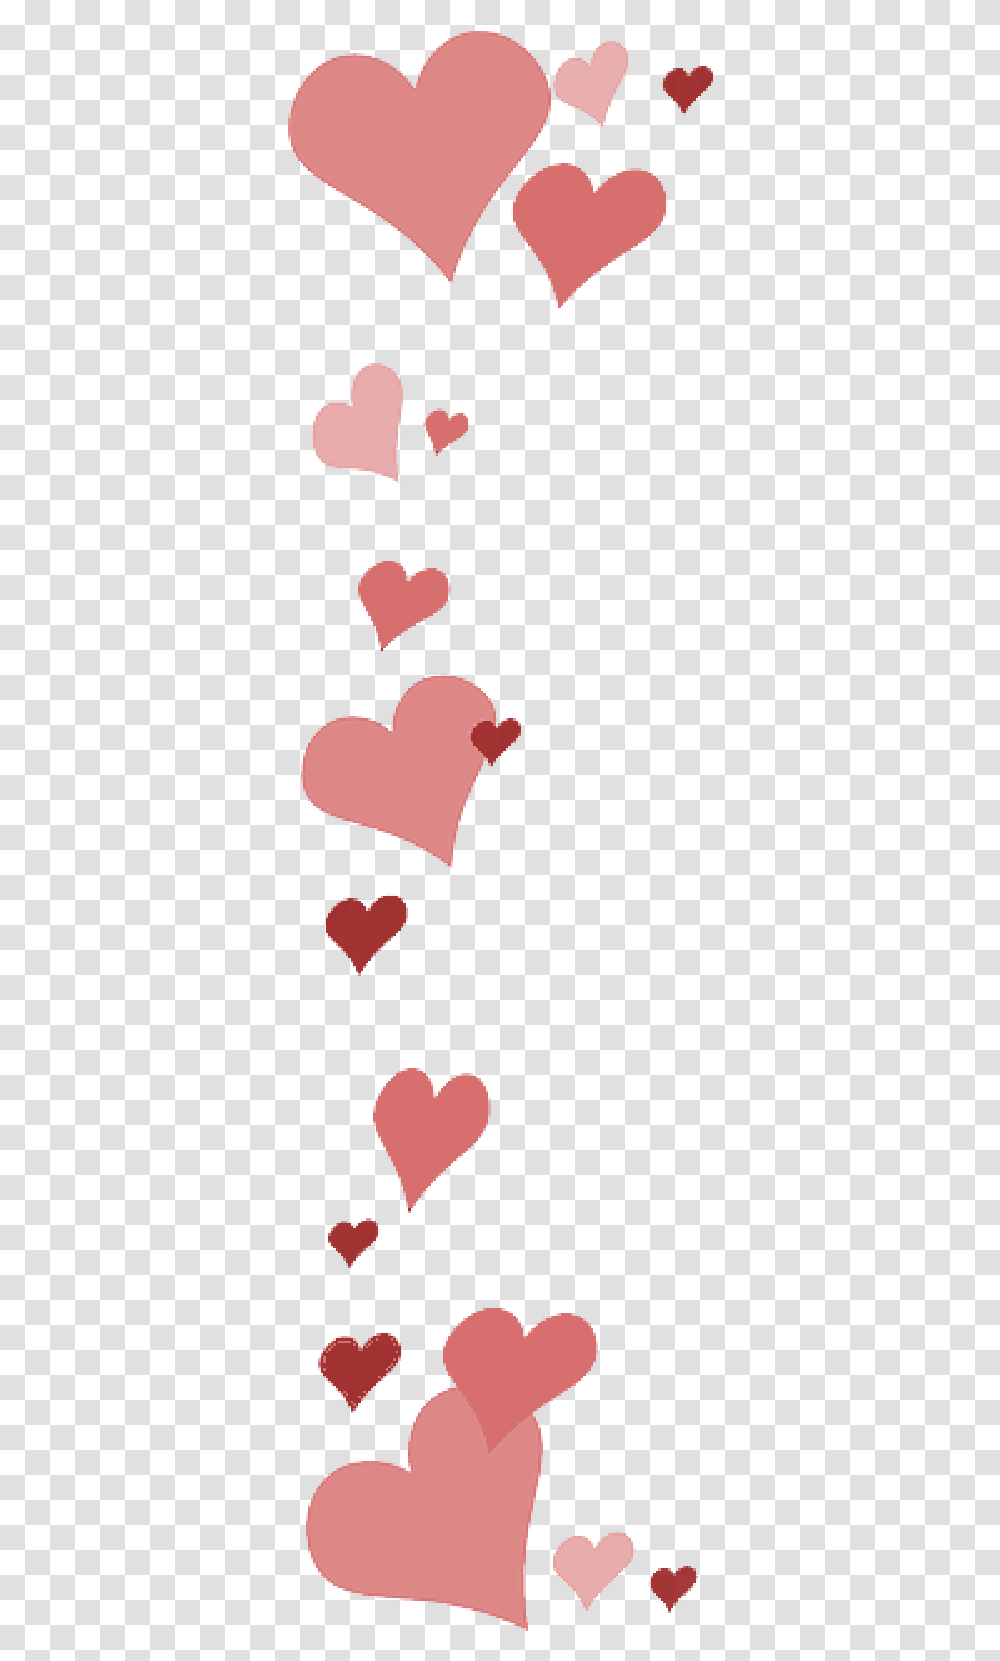 Love Pink Hearts Transparentpng Valentine Border Clipart Transparent Png